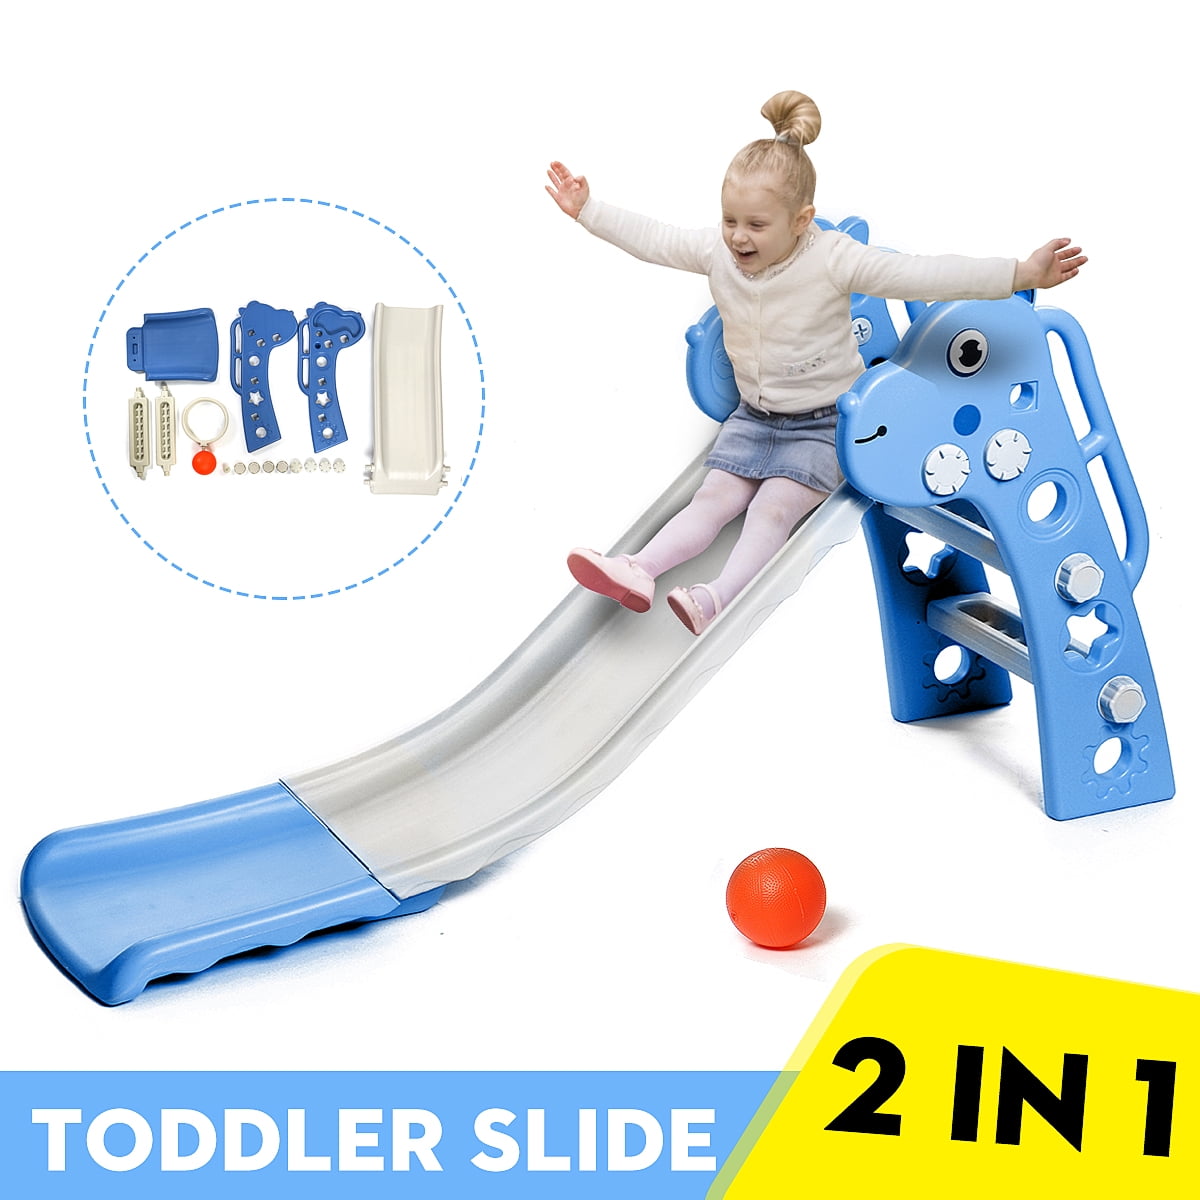 Toddler Slide Indoor Outdoor Kids Fun Toy Christmas Gift Indoor Backyard Play 